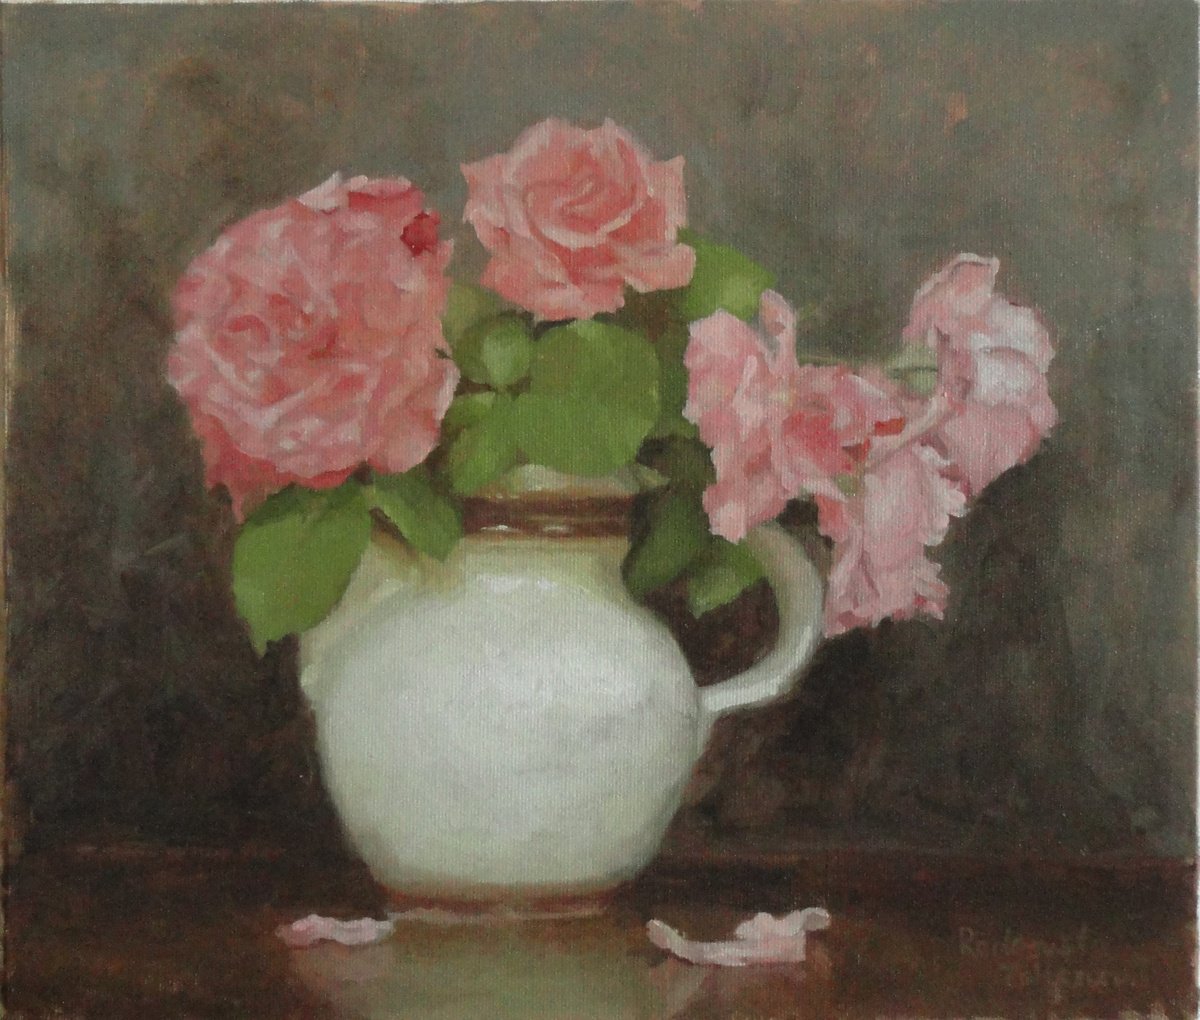 Five Roses by Radosveta Zhelyazkova